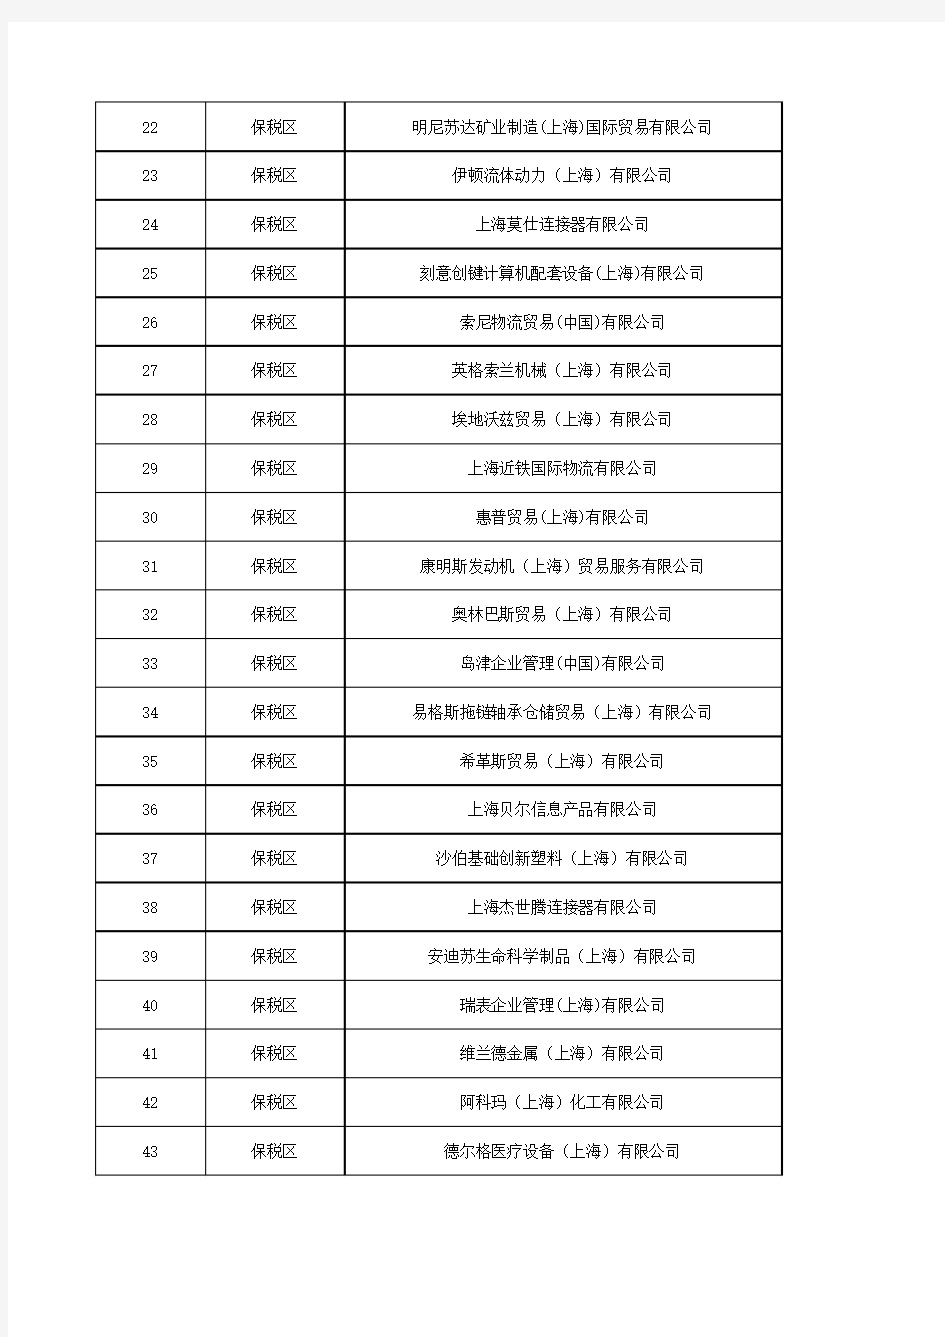 截止到20130201上海海关AA类企业名单